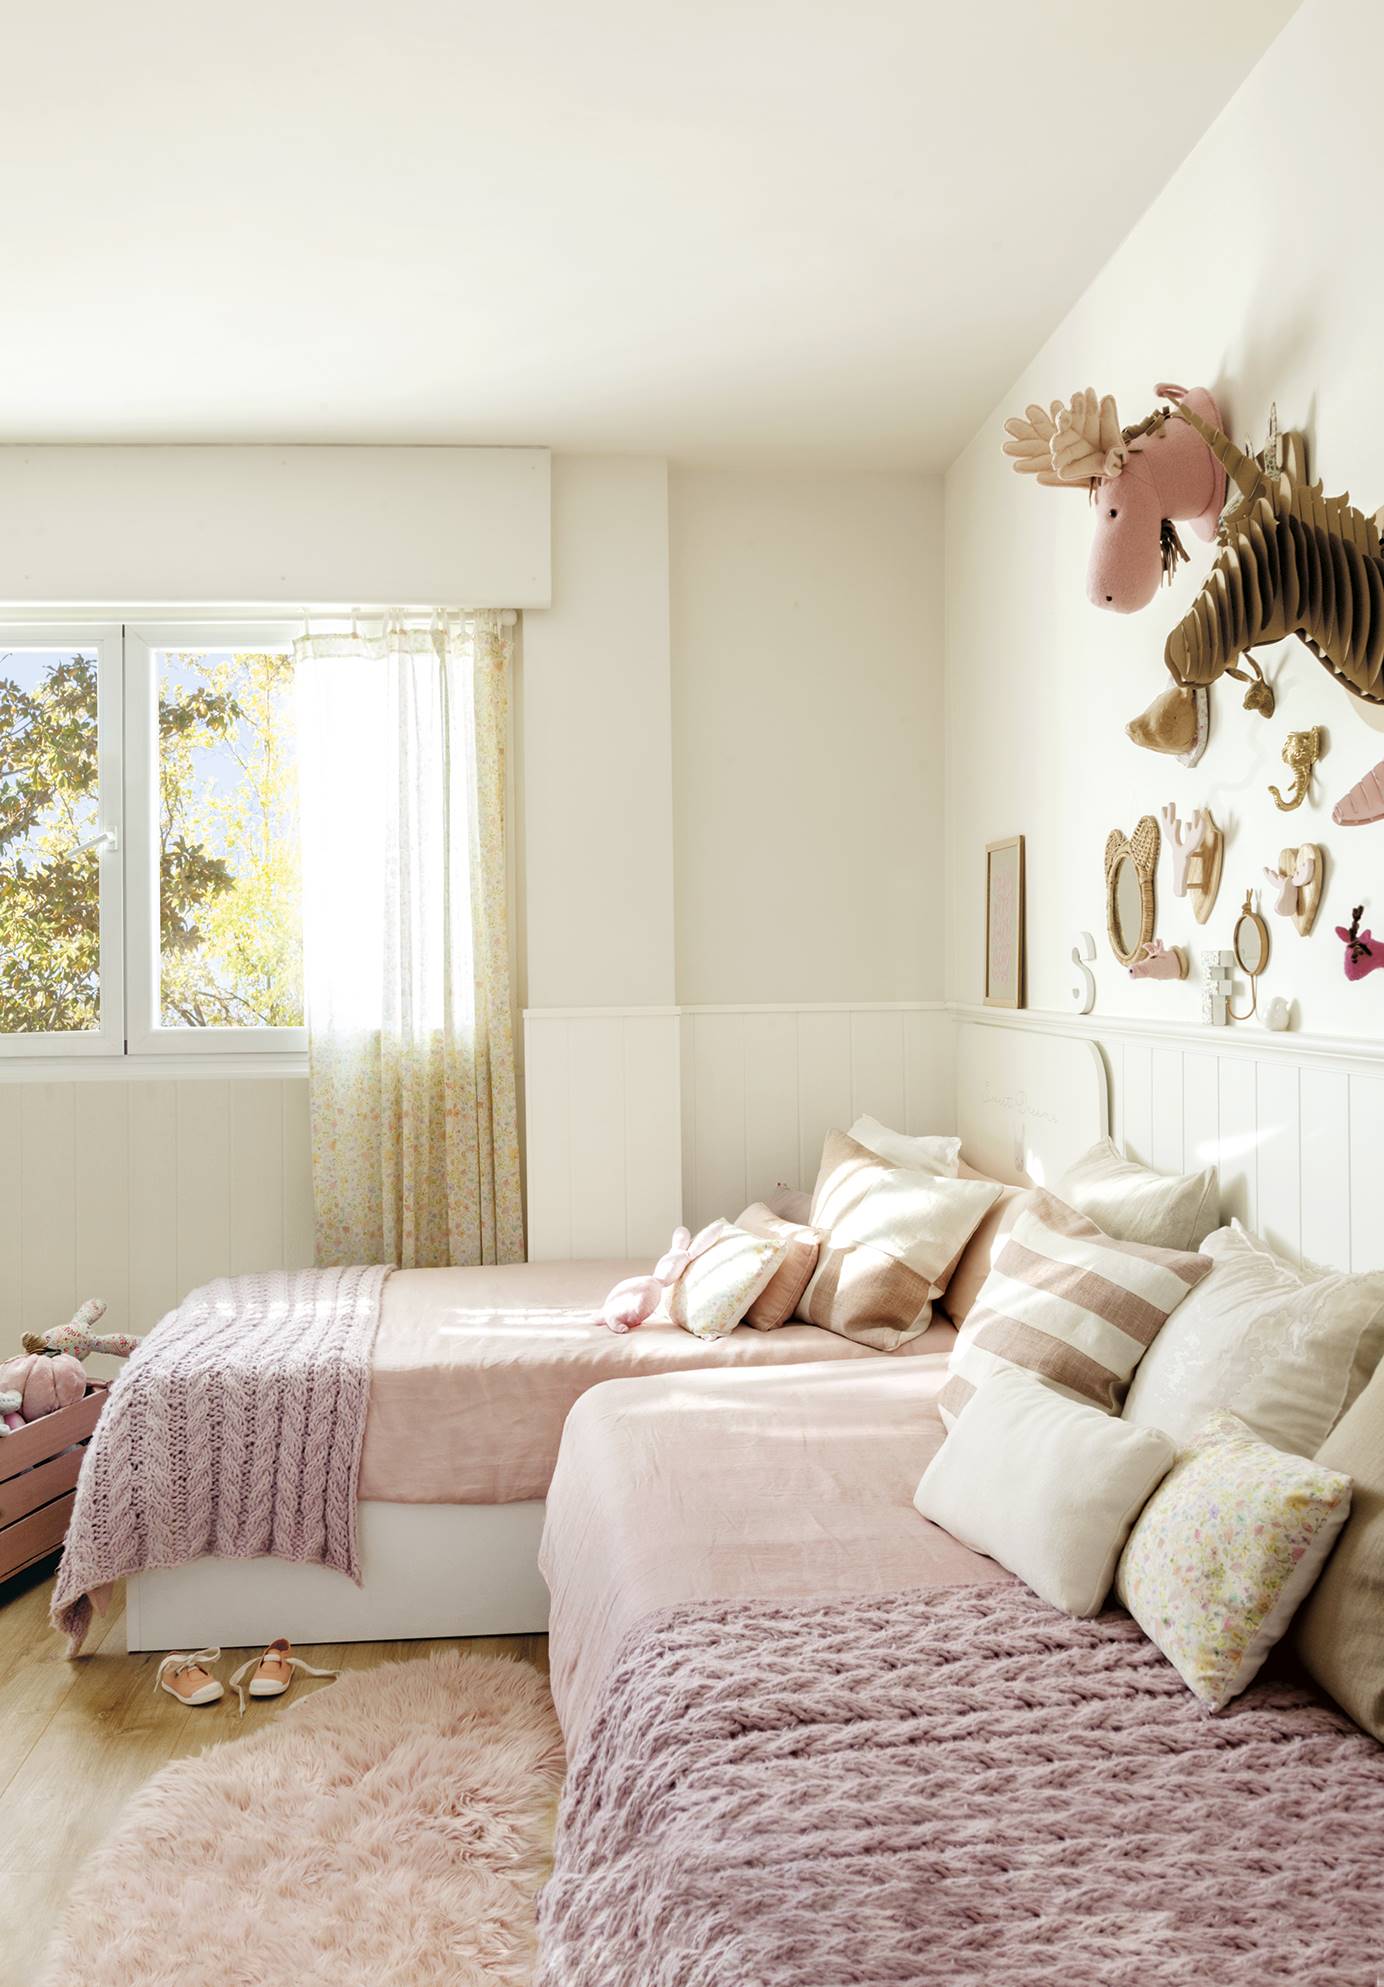 Habitación infantil con ropa de cama en color fresa claro y arrimadero blanco en la pared. 